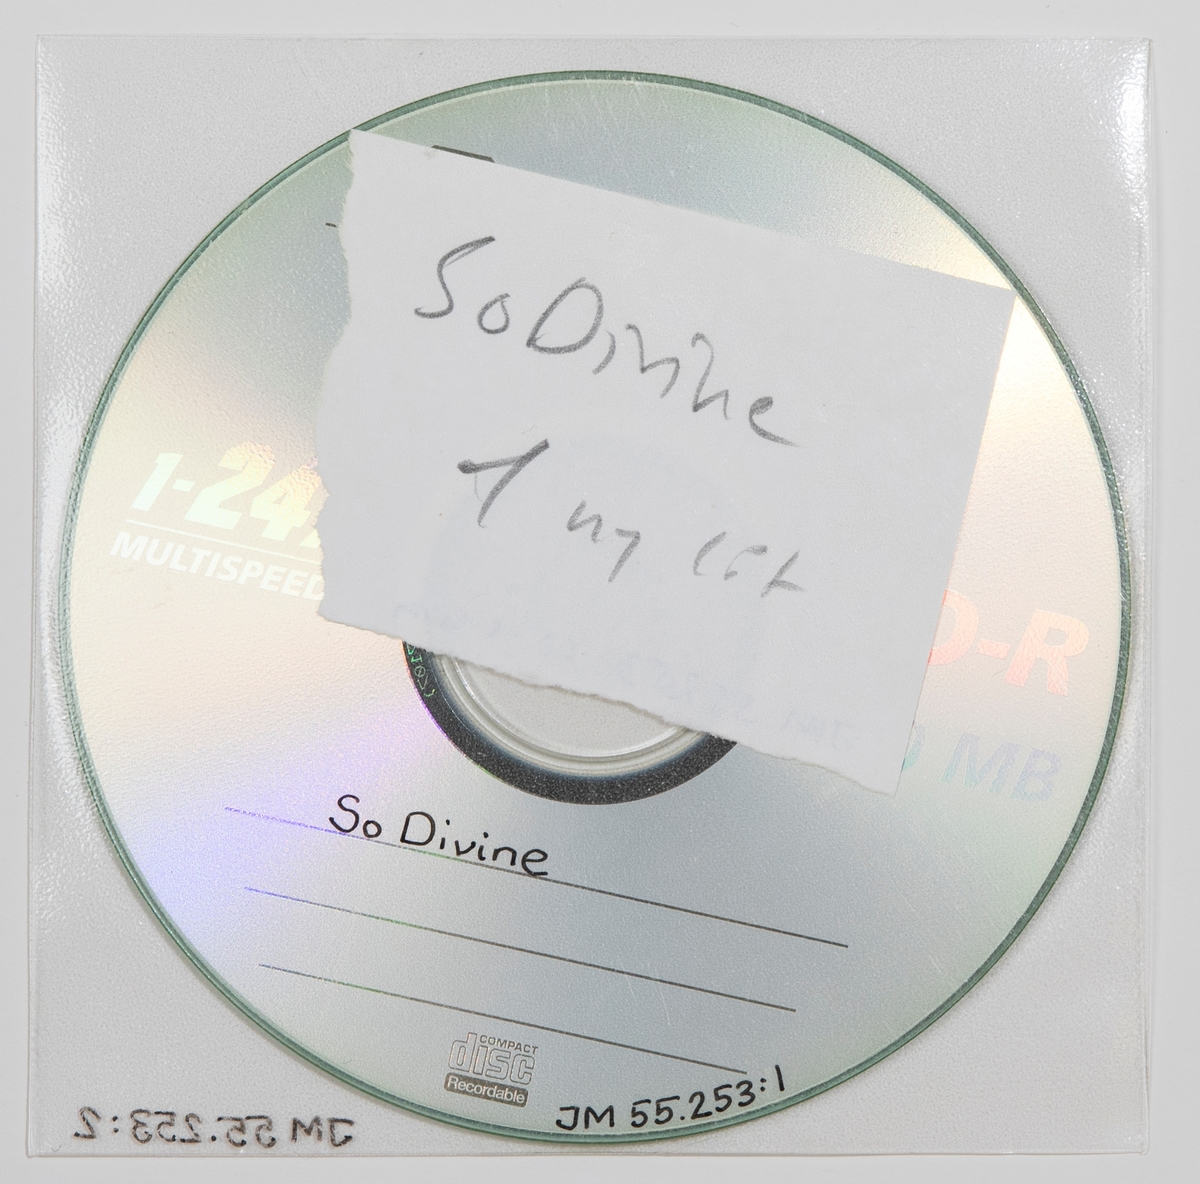 CD-skiva i plastficka. Inne i plastfickan ligger en handskriven papperslapp med texten: "So Divine 1 ny låt".

JM 55253:1, Skiva
JM 55253:2, Plastficka